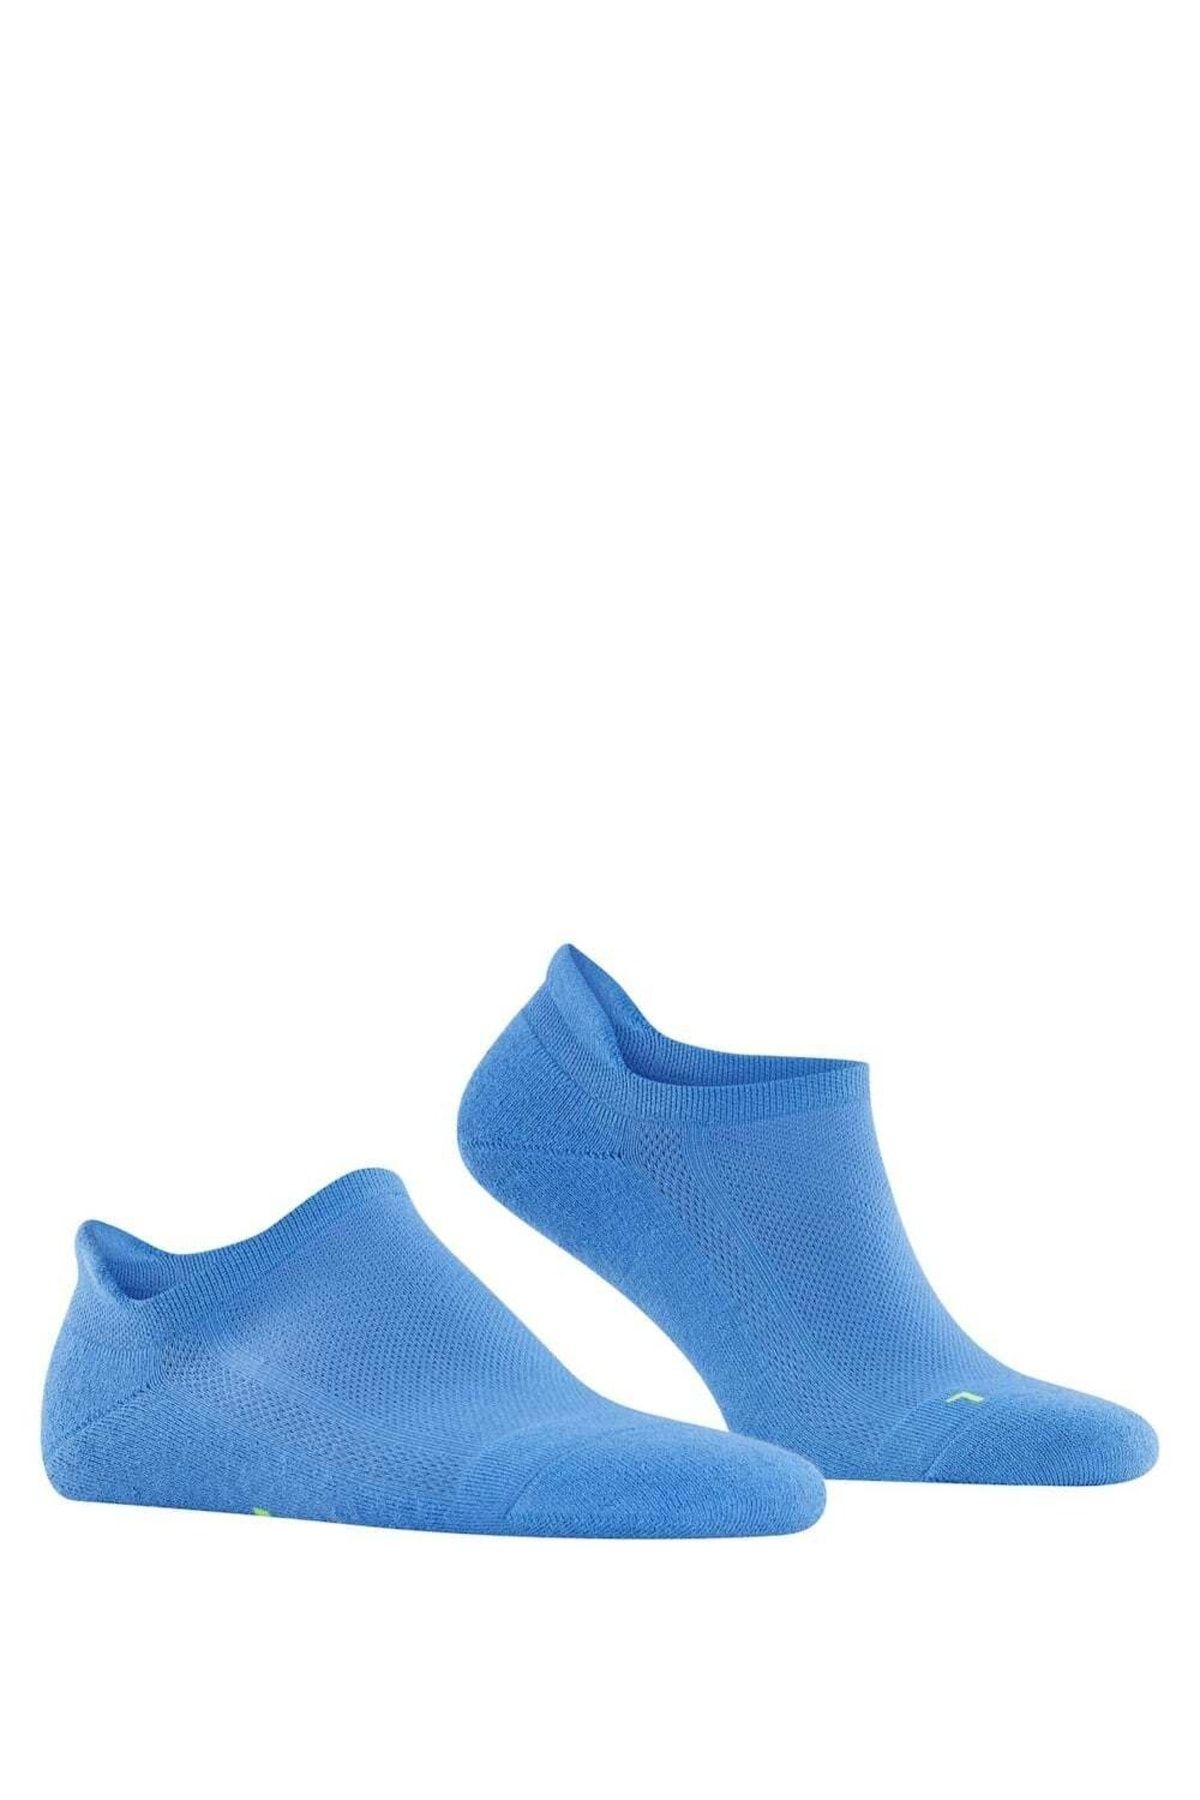 - Unisex Kick, Sneakersocken - Socken, ultraleicht, 37-48 Uni, FALKE Cool Trendyol anatomisch,